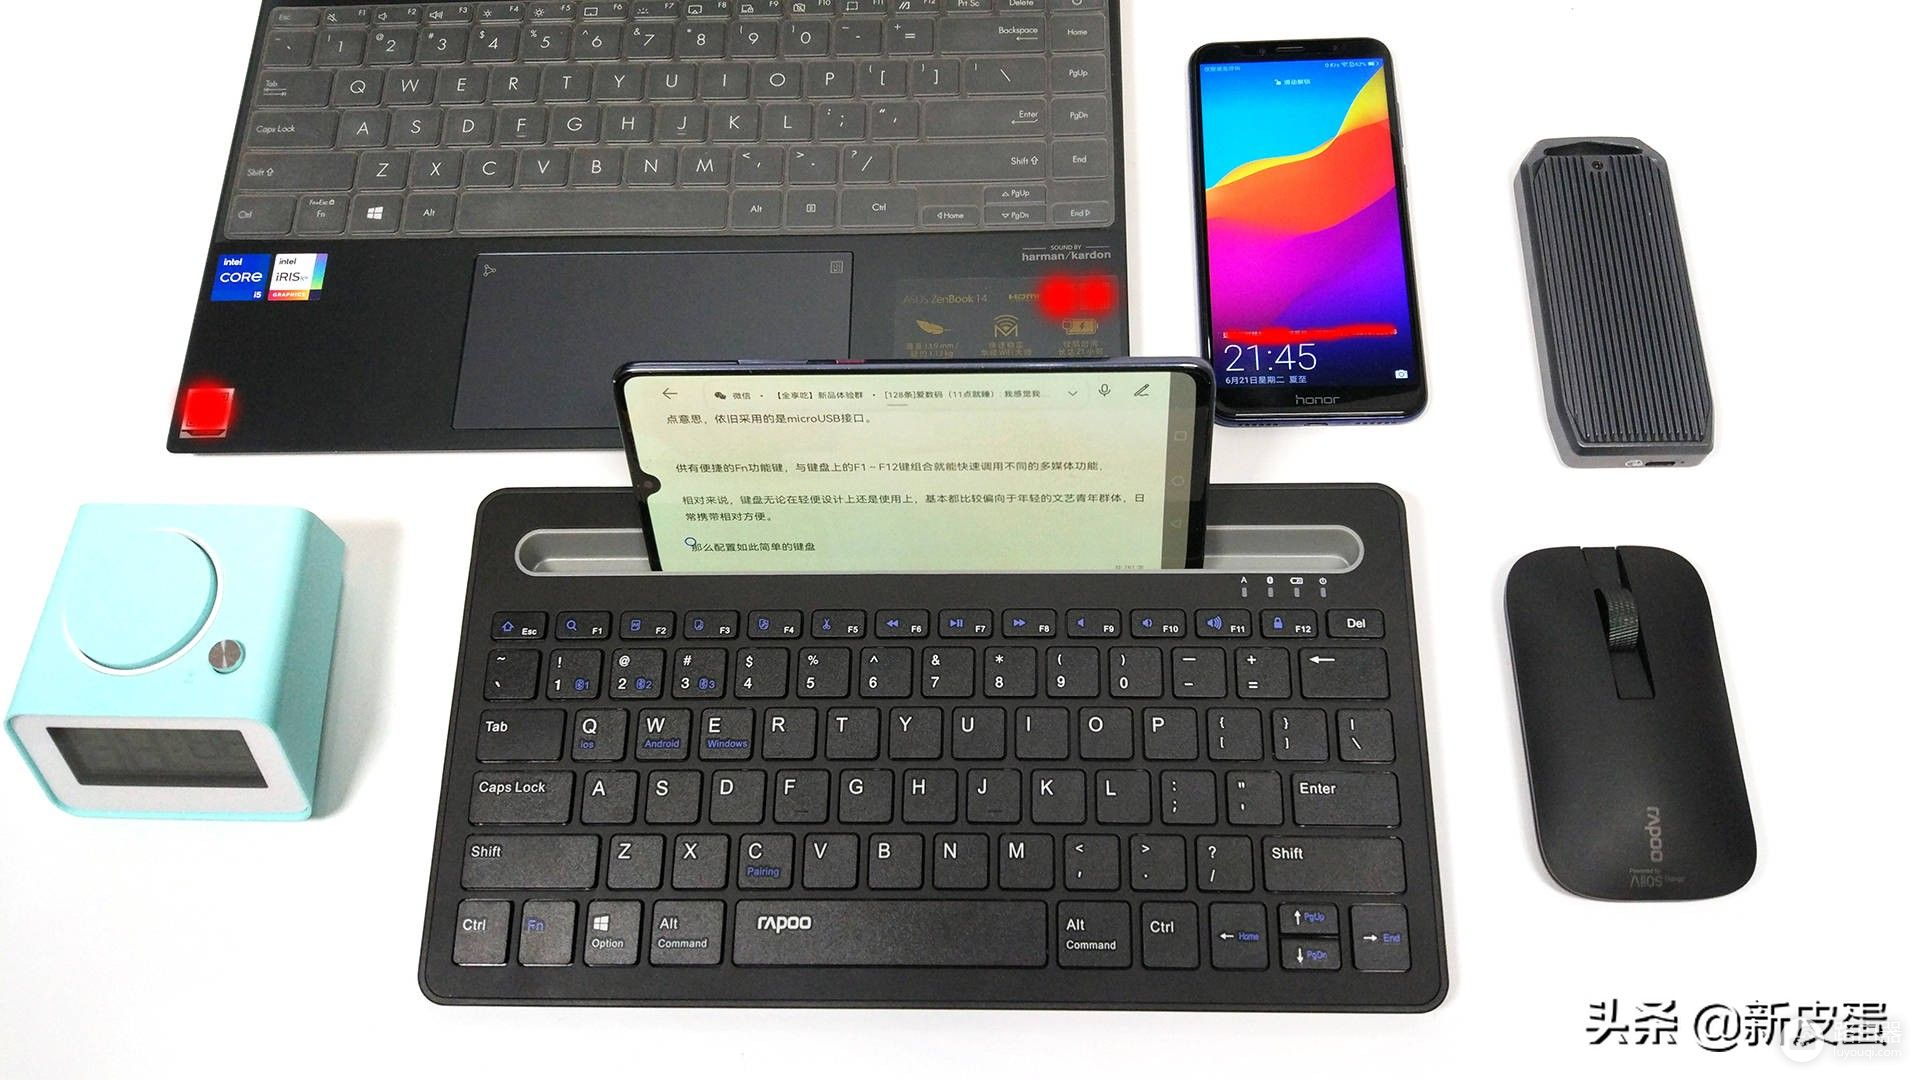 文艺小清新，自带平板支架的雷柏XK100键盘简评